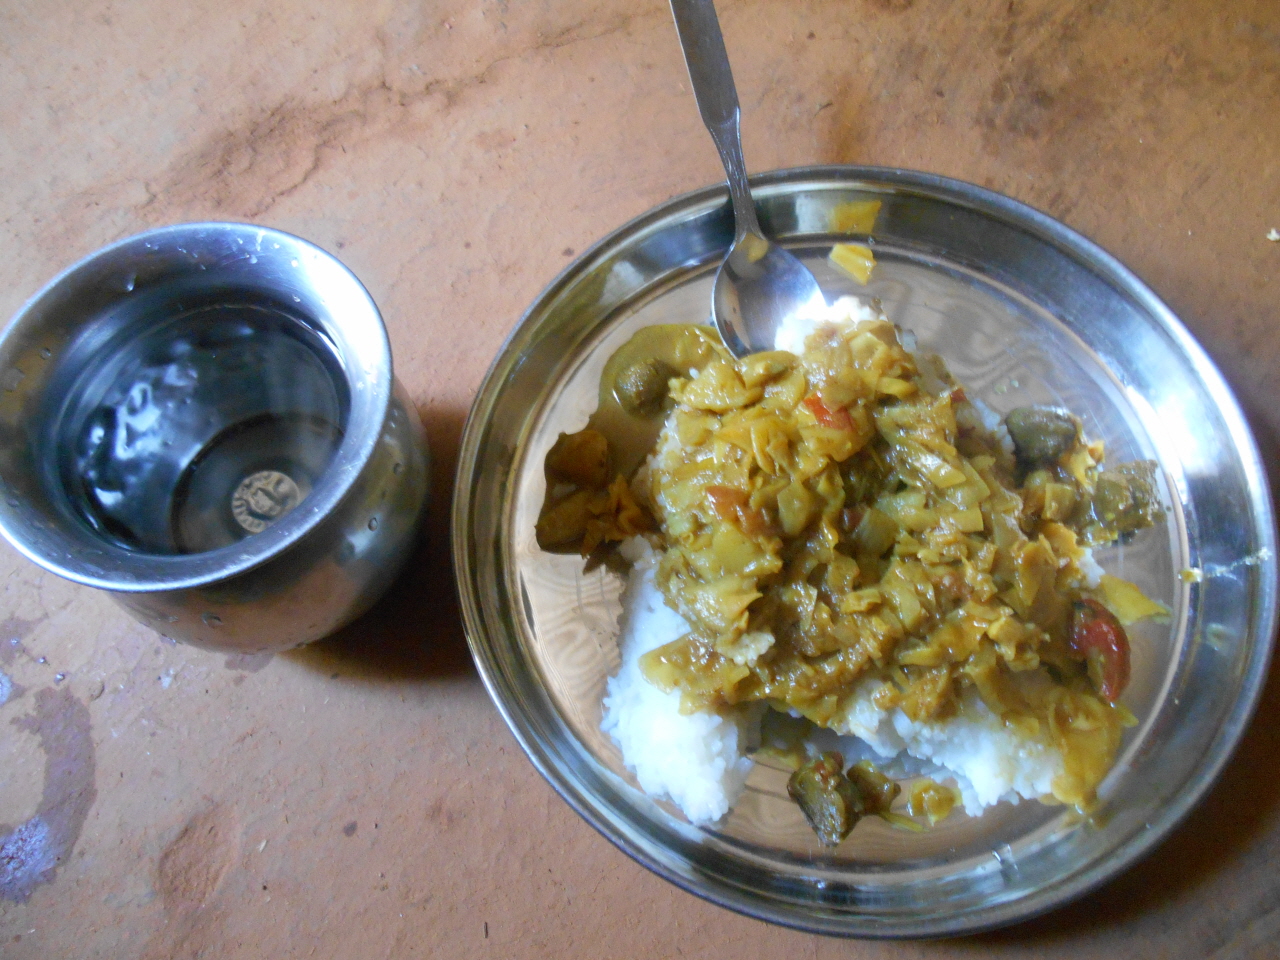 네팔 부부가 내 준 음식. 네팔 사람들과 인도 사람들이 즐겨먹는 음식인 '달'.